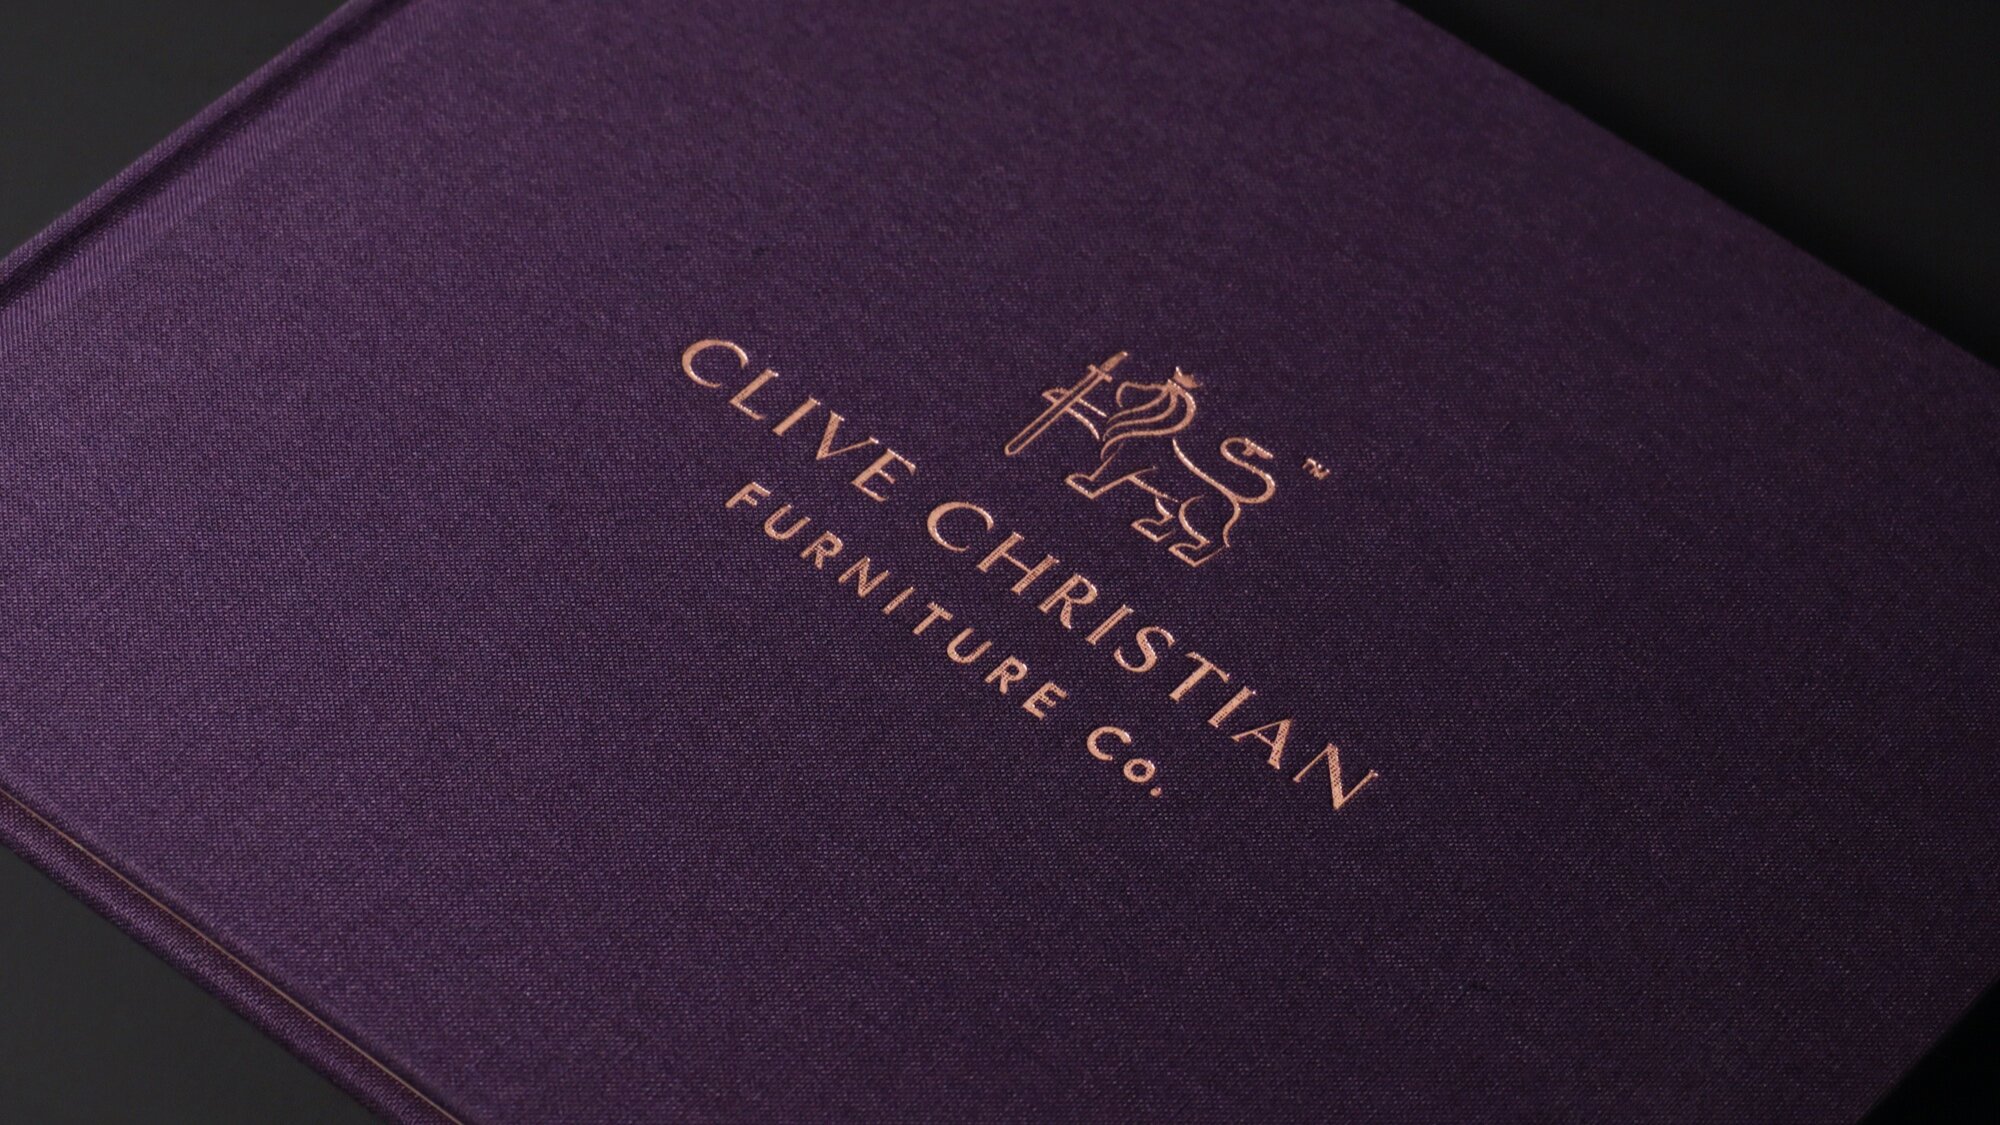 Copy of Copy of Copy of Copy of Clive Christian Furniture Rebrand